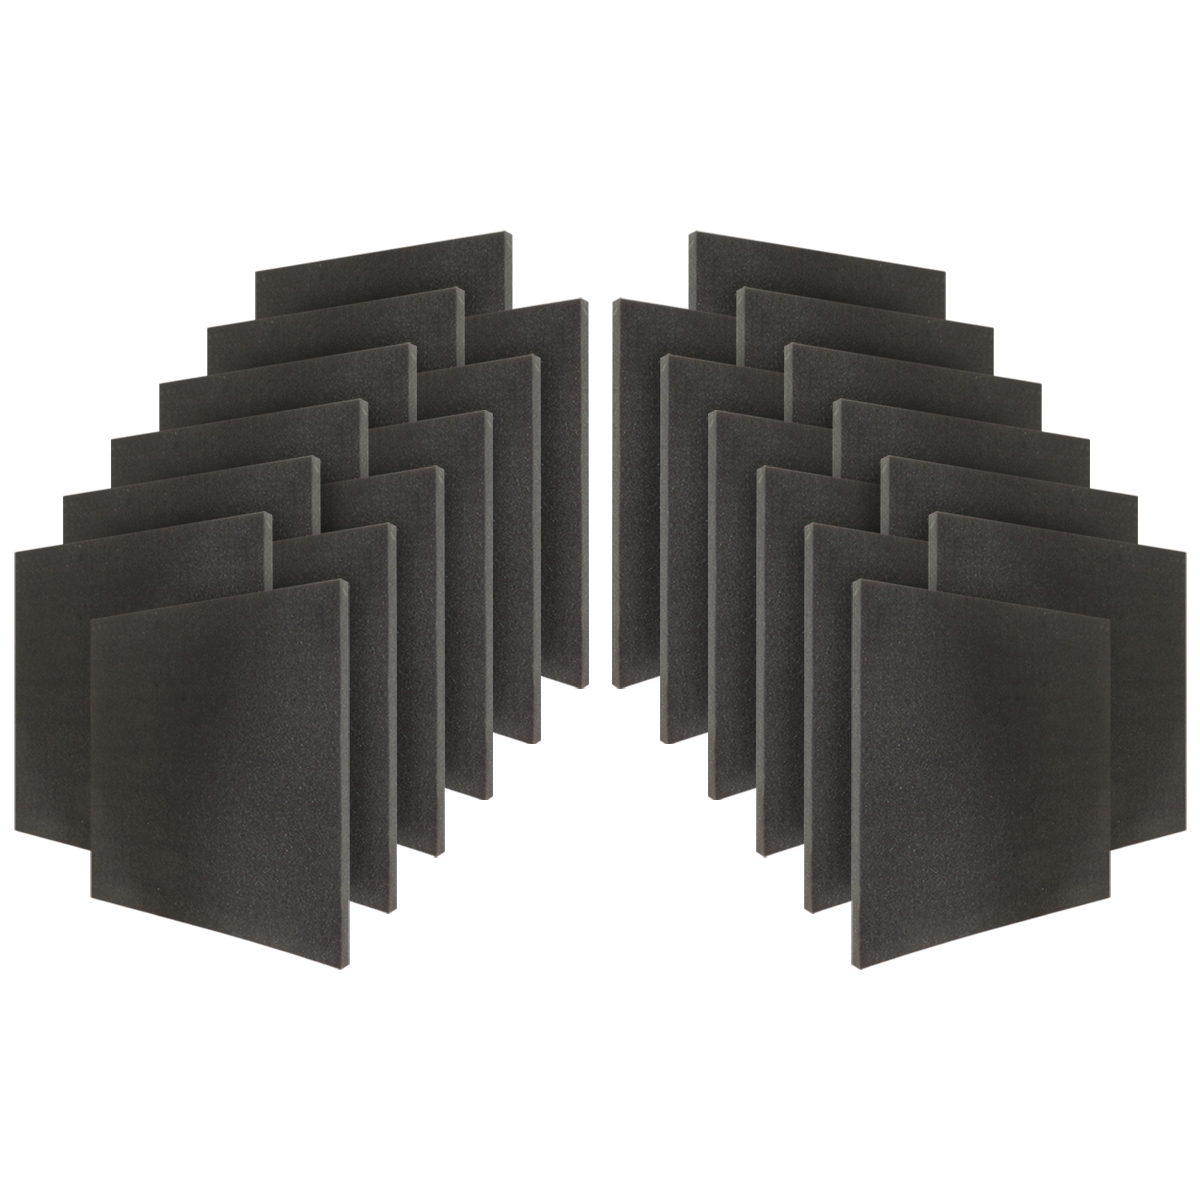 Professional acoustic panel eal2-Sxt24 panel esponja acústica sala de cine kit 24 pzas 20x20x5cm